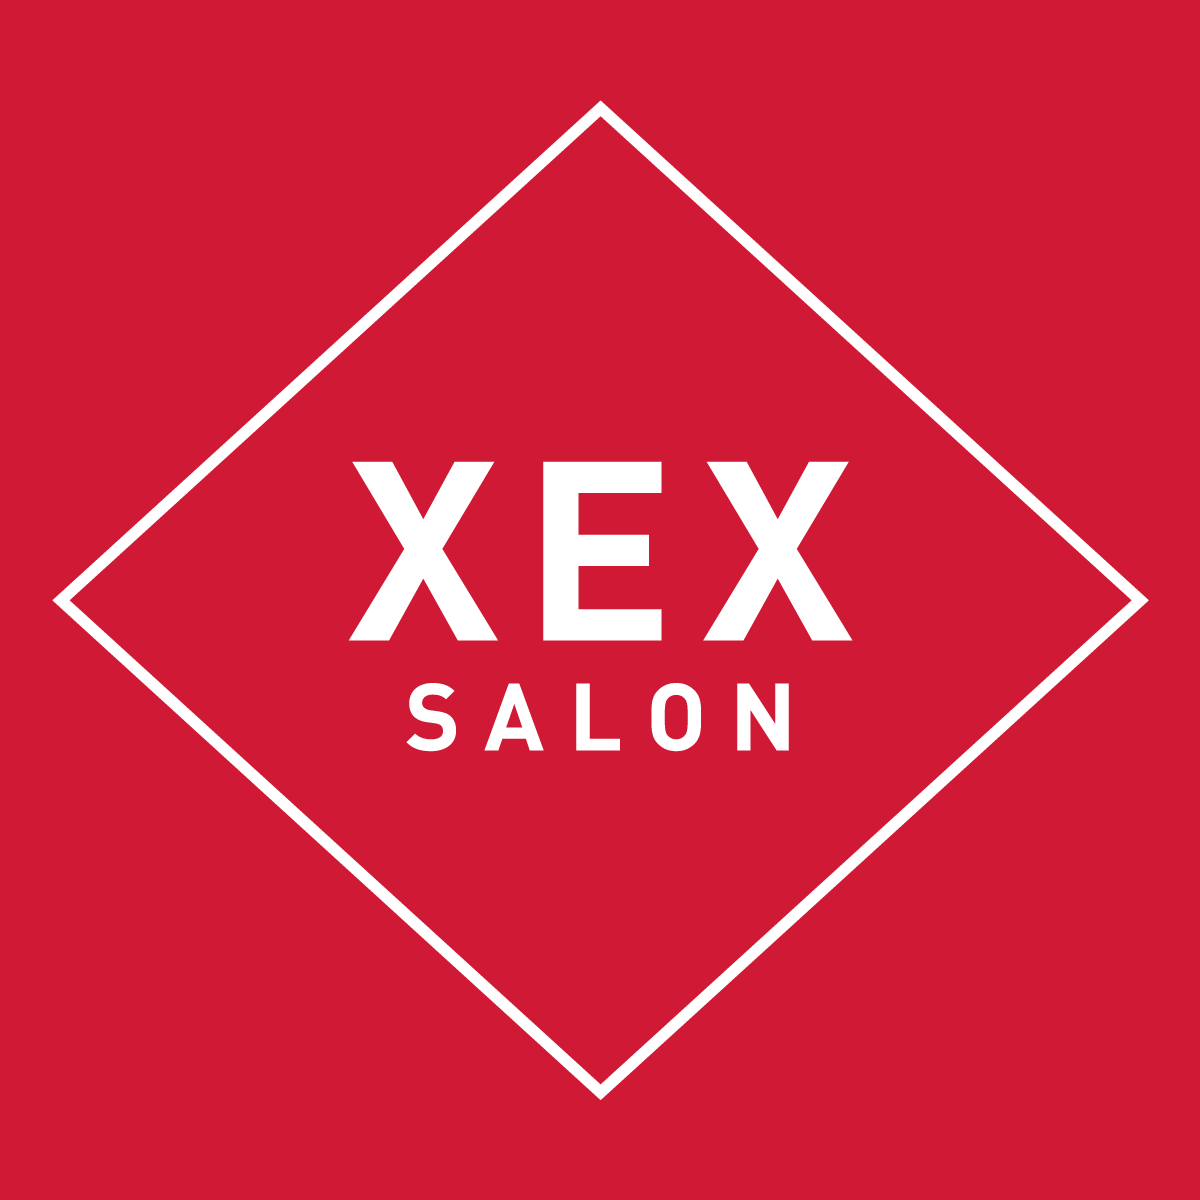 XEX Salon XEX Salon Chicago (312)372-9211